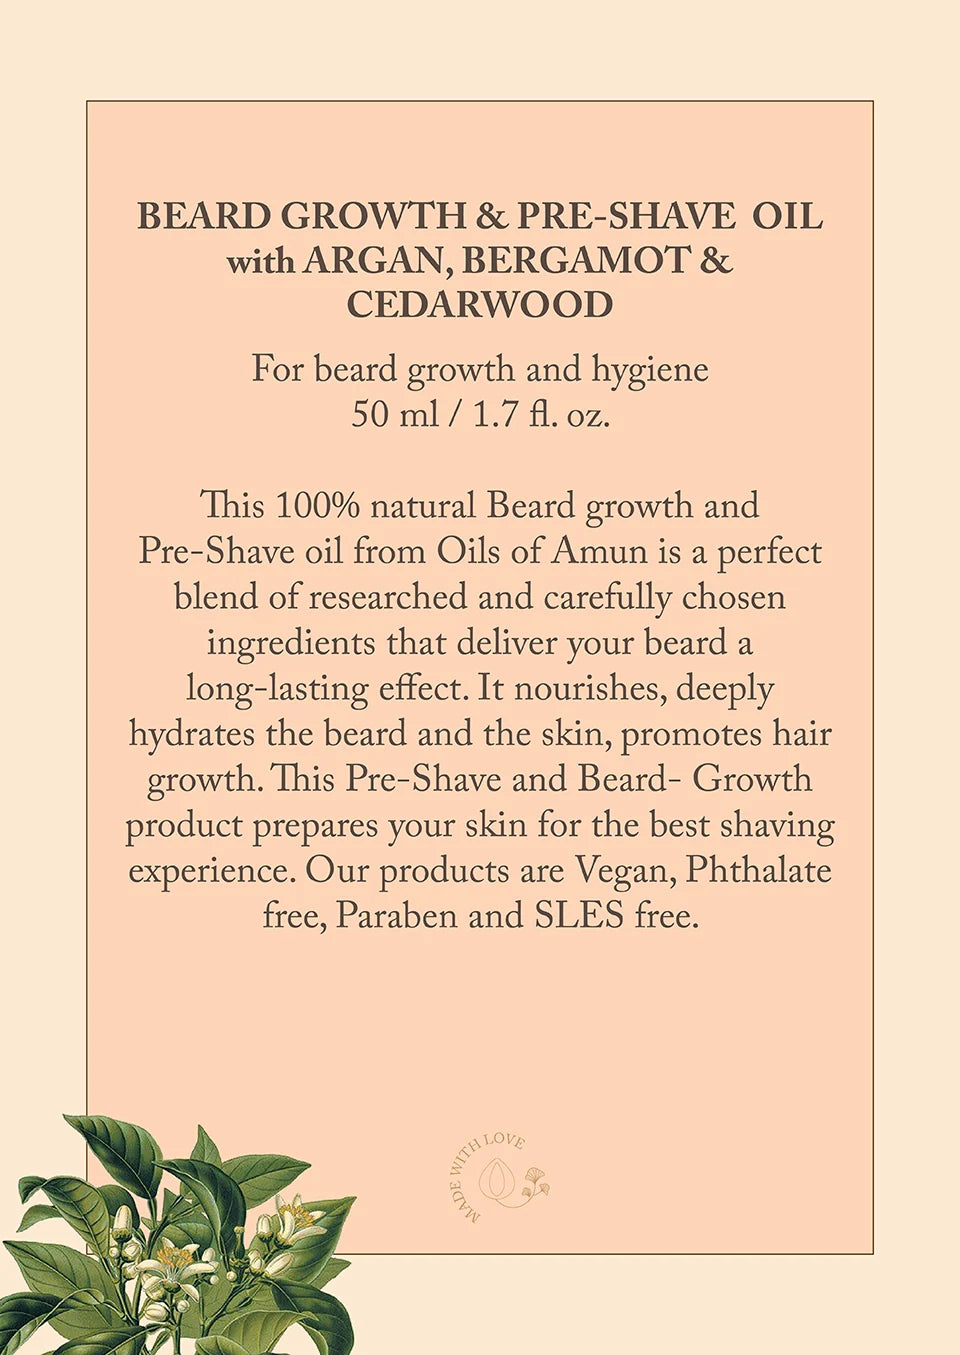  Bread Growth Oil Description